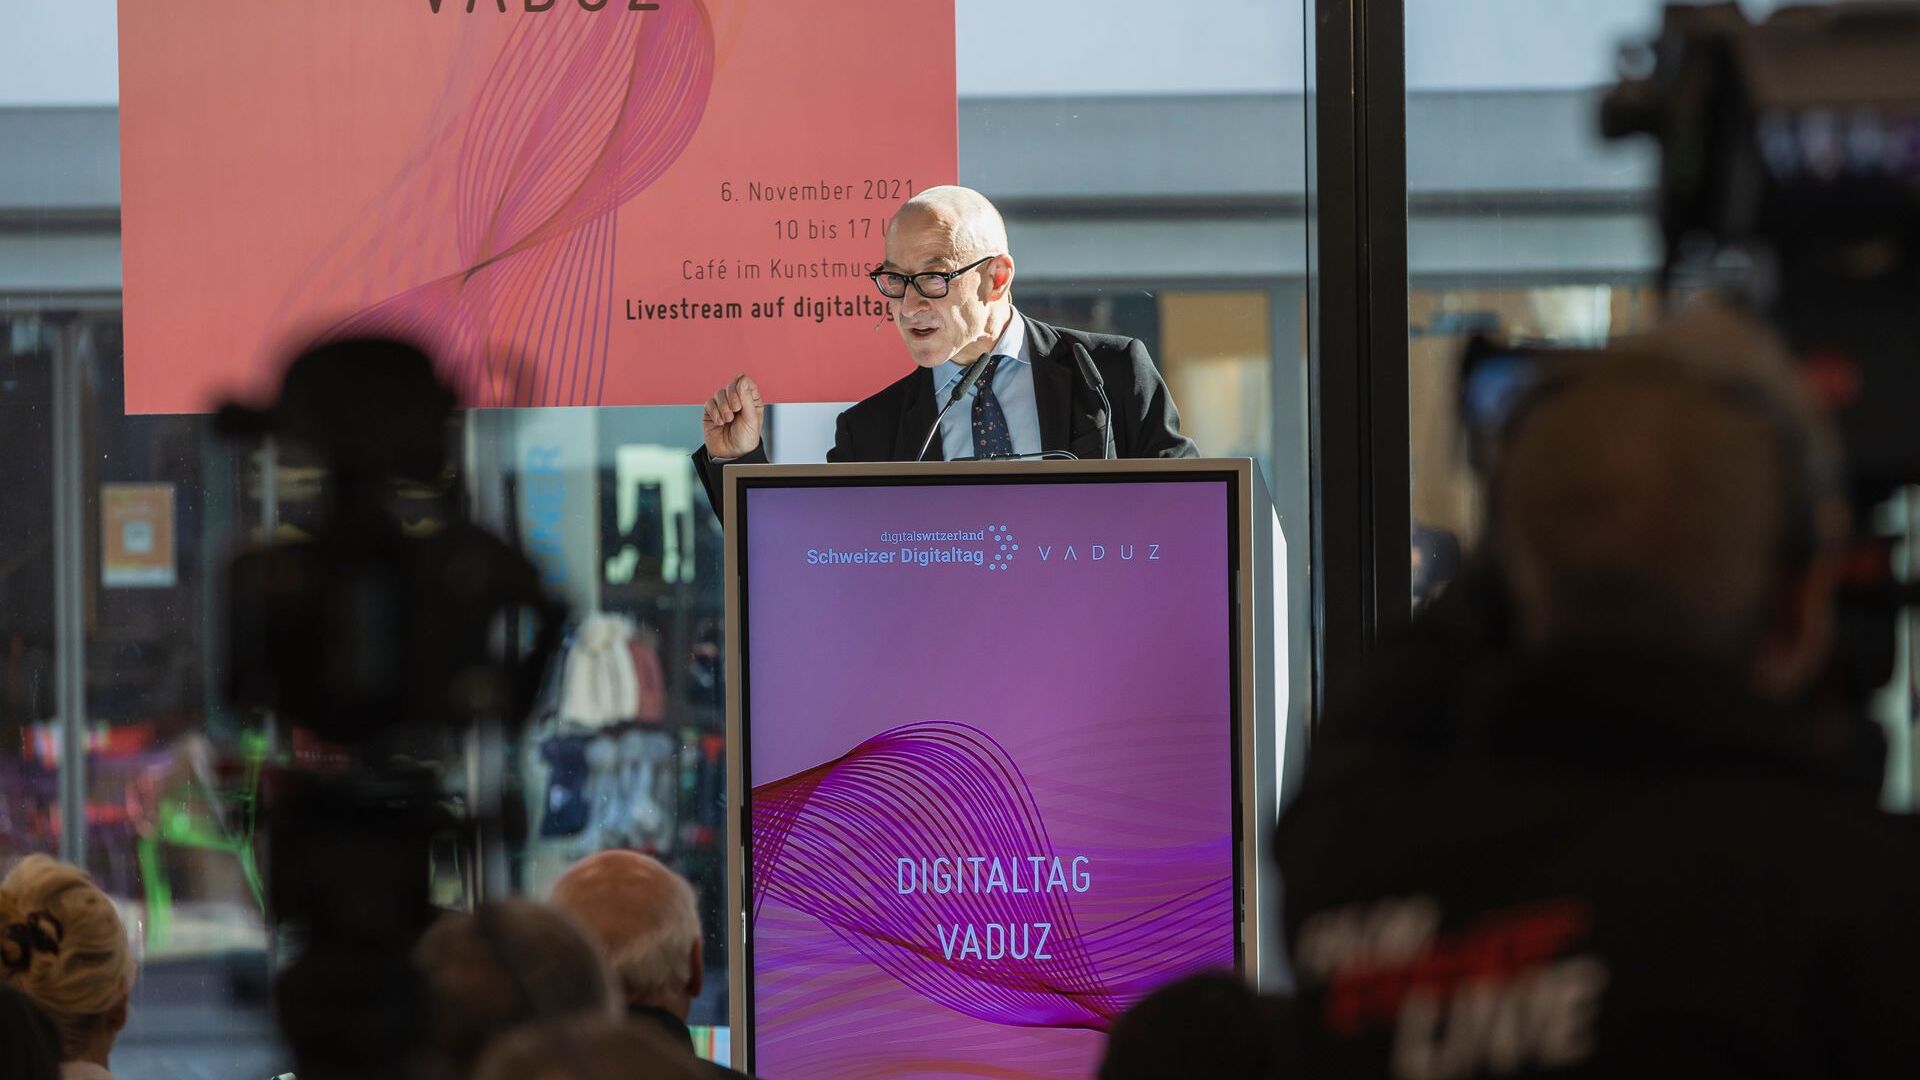 "Digitaltag Vaduz", ønsket velkommen av Kunstmuseum i hovedstaden i fyrstedømmet Liechtenstein lørdag 6. november 2021, vekket entusiasmen blant publikum og foredragsholdere i analogi med "Swiss Digital Day" påfølgende dag 10: intervensjonen fra den tyske futuristen og trendeksperten David Bosshart